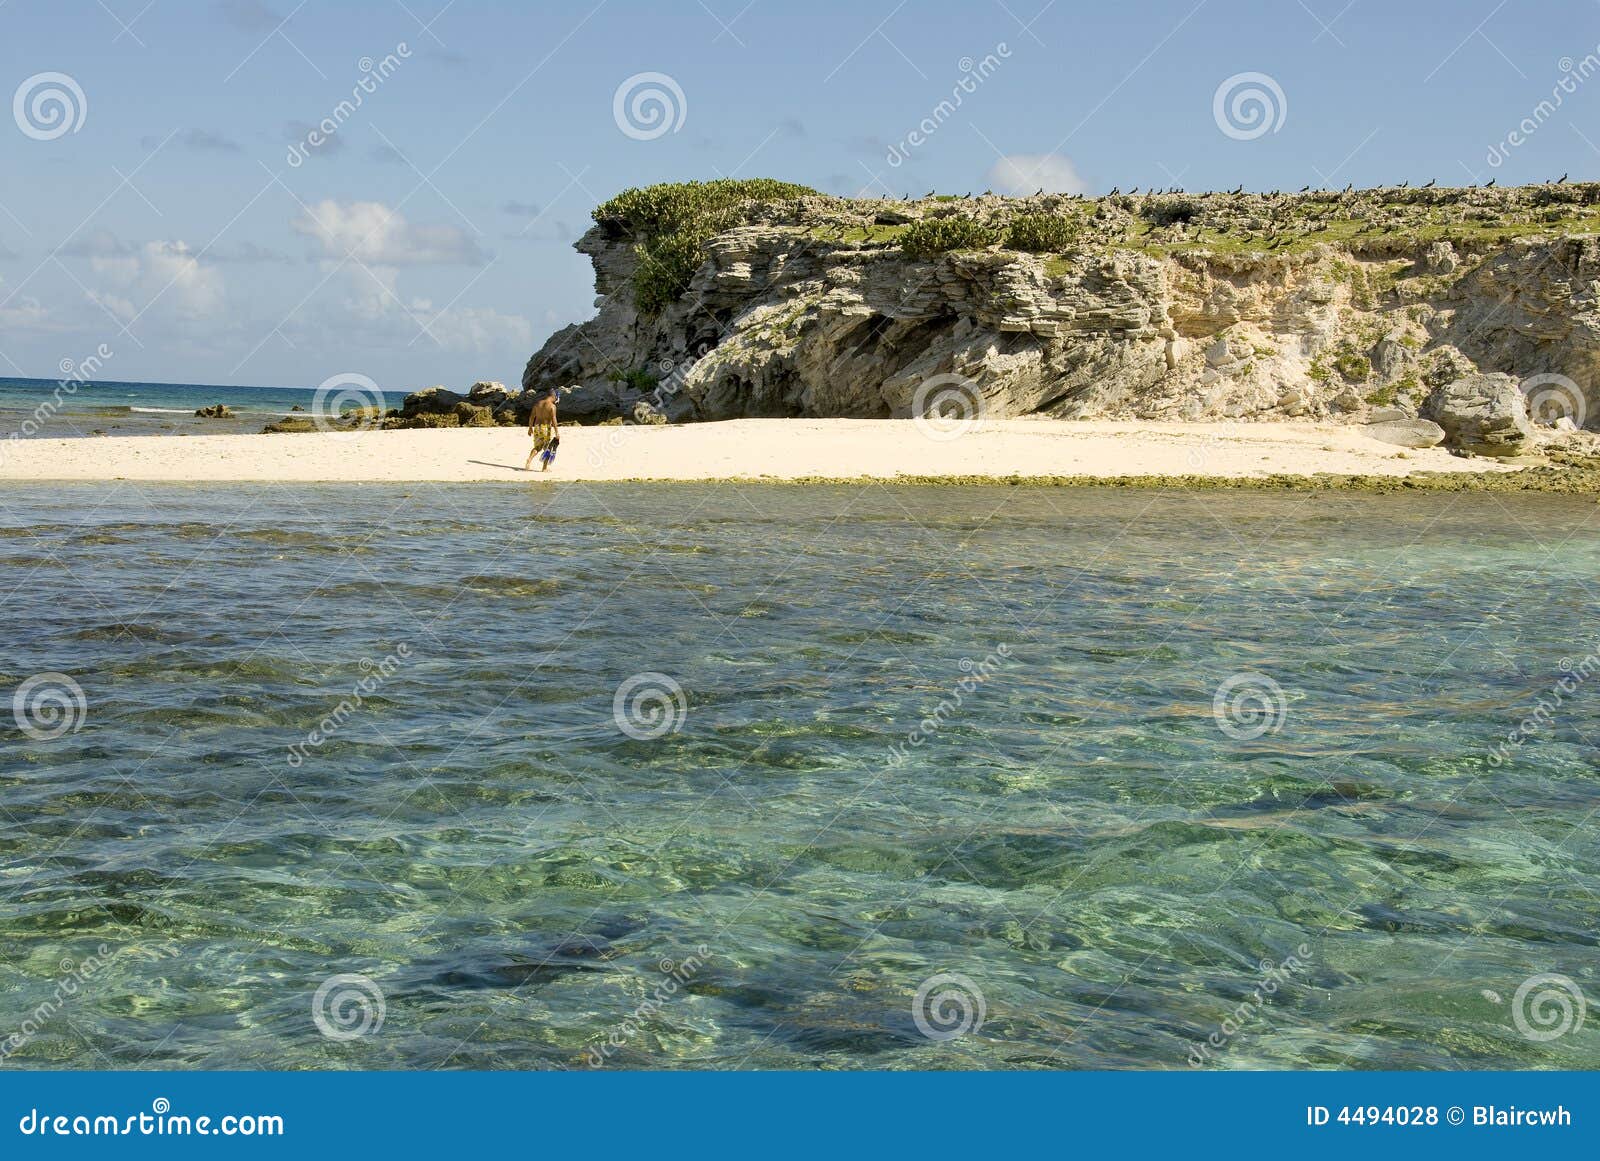 Snorkeler op strand. Een snorkeler aan wal op een verlaten eiland.